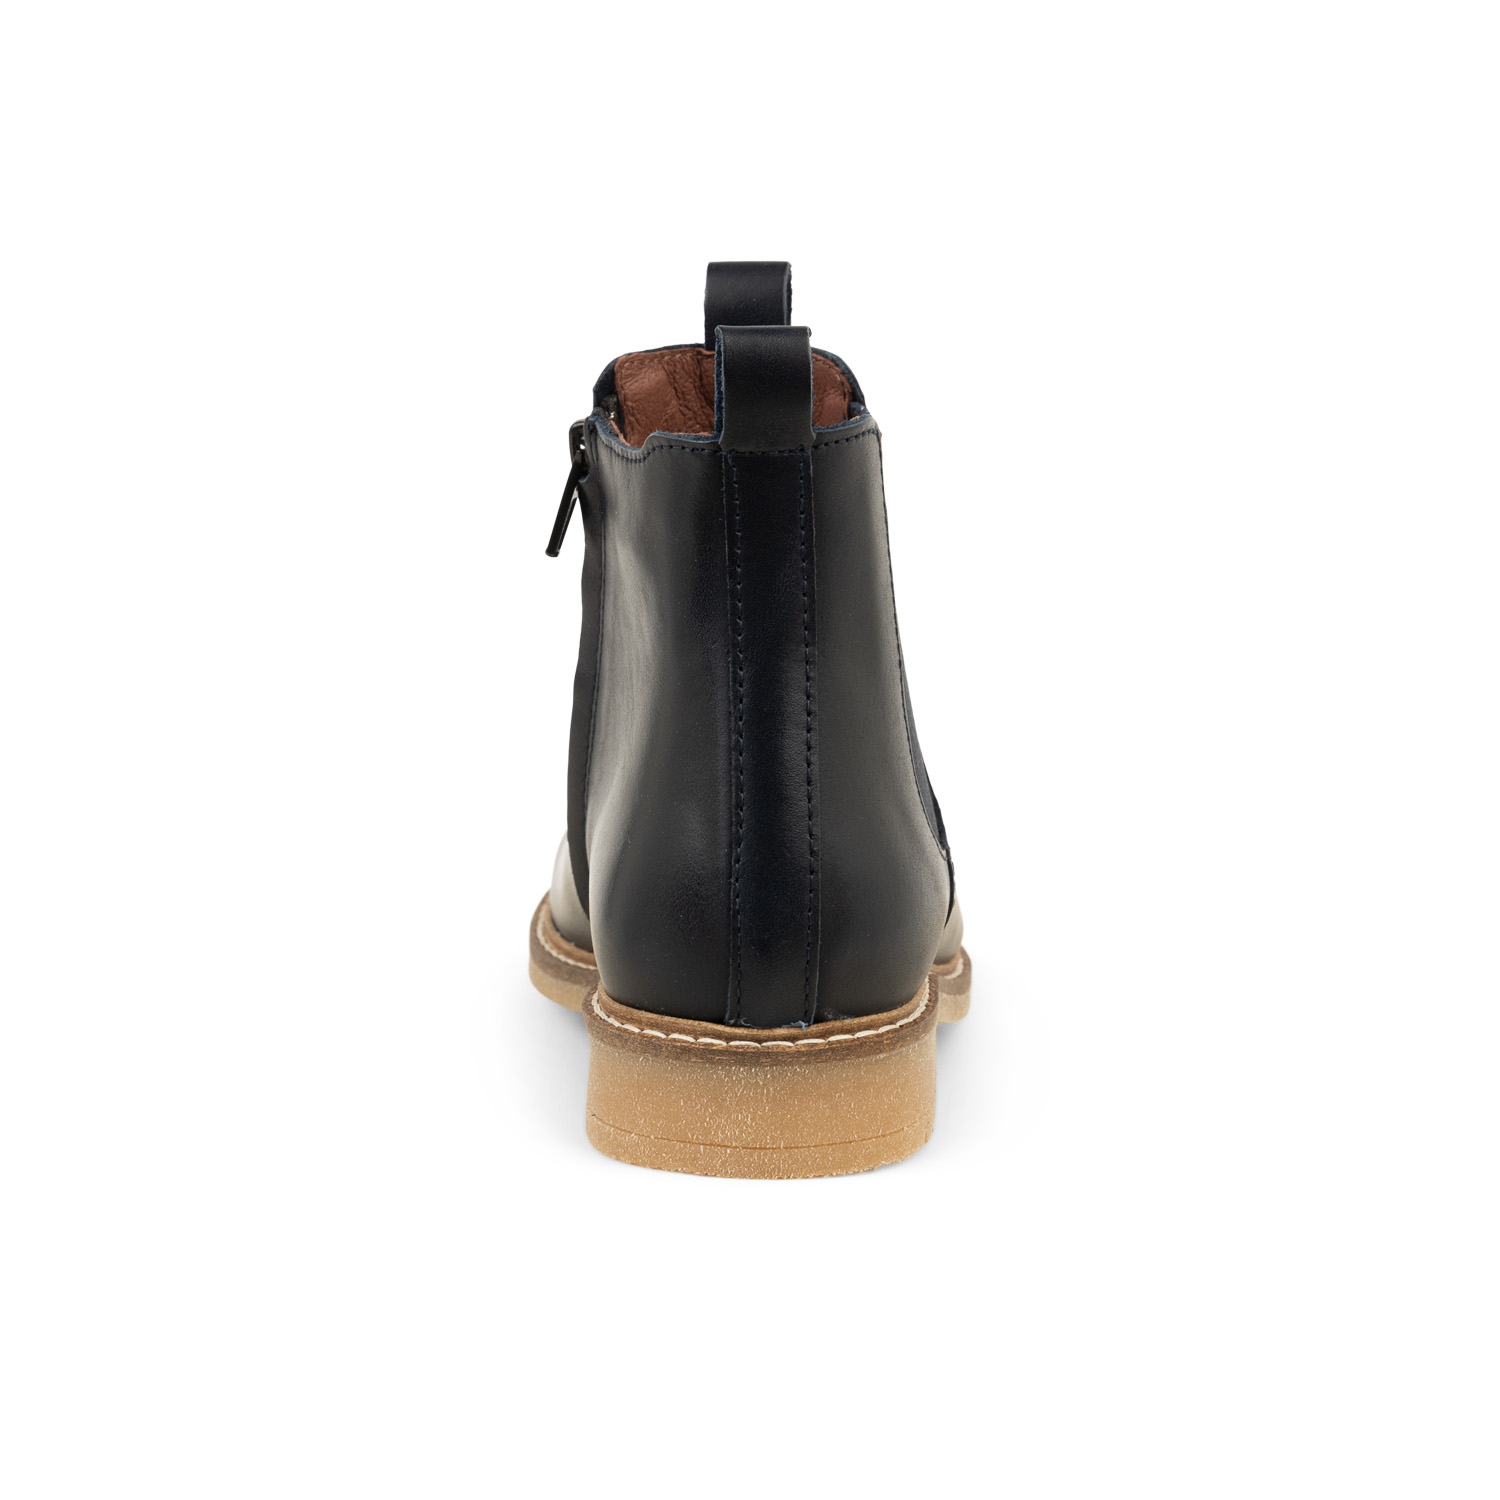 03 - LOUISE - BELLAMY - Boots et bottines - Cuir